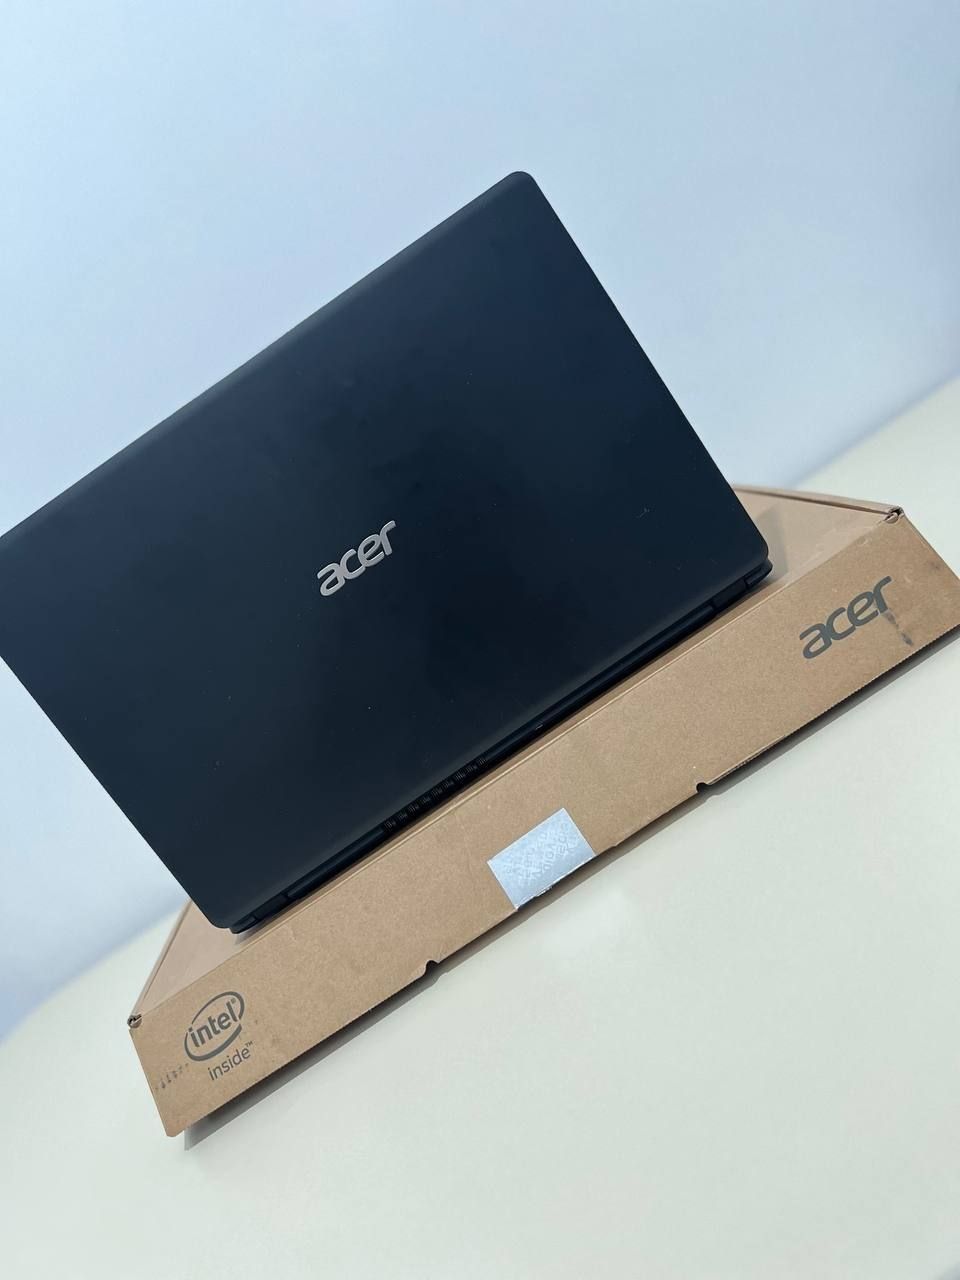 Acer Aspire 3 
цвет : Черный (Black)
Экран: 15,6 HD
Виде